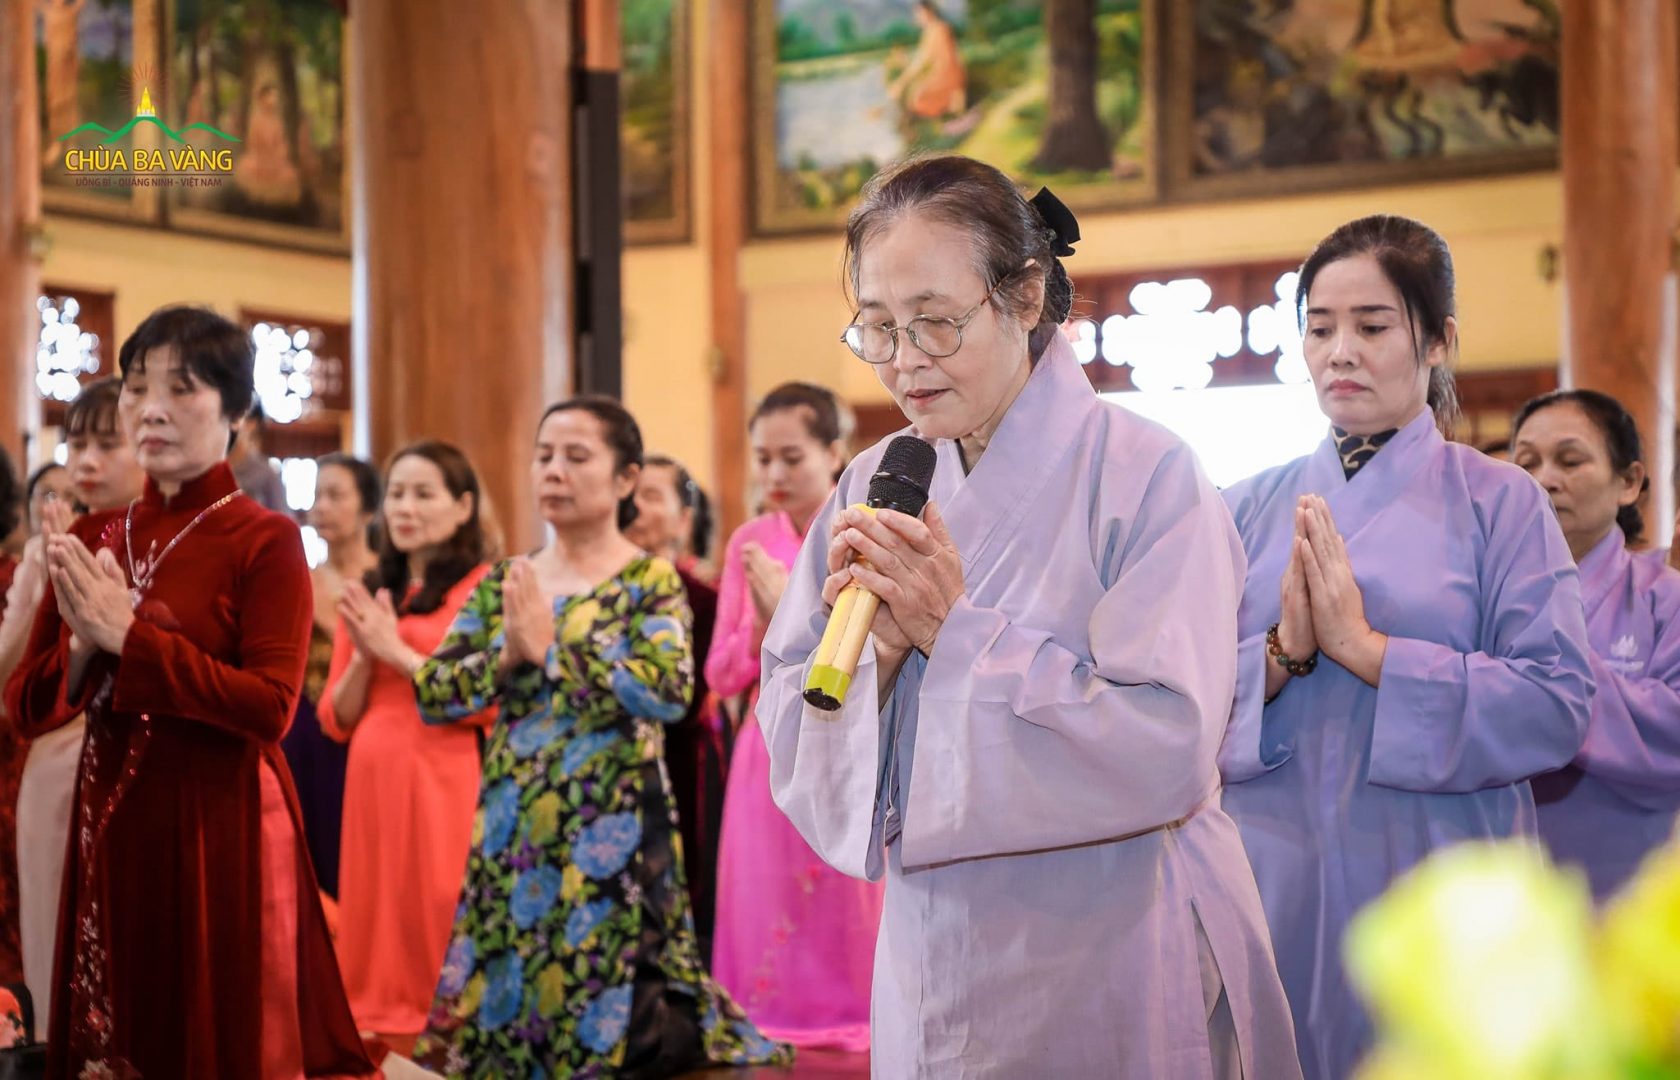 Đại diện Phật tử đạo tràng dâng lời tác bạch tới Sư Phụ Thích Trúc Thái Minh